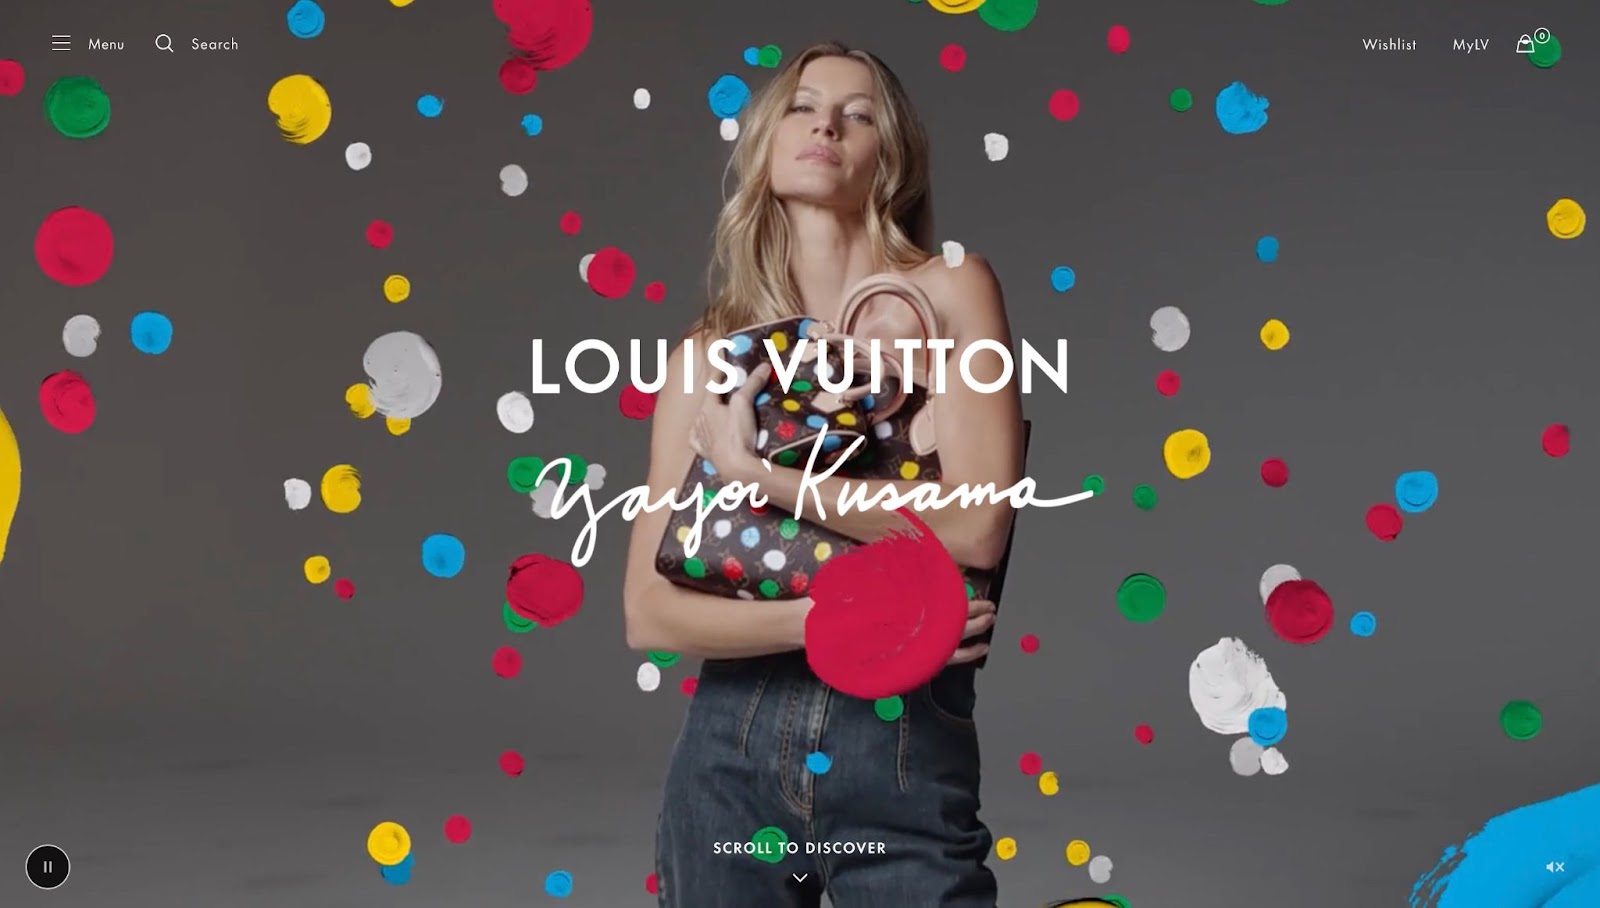 Изображение Жизель Бюндхен в дополнении Louis Vuitton x Yayoi Kusama. На нем она держит сумку из коллекции в горошек вокруг нее.